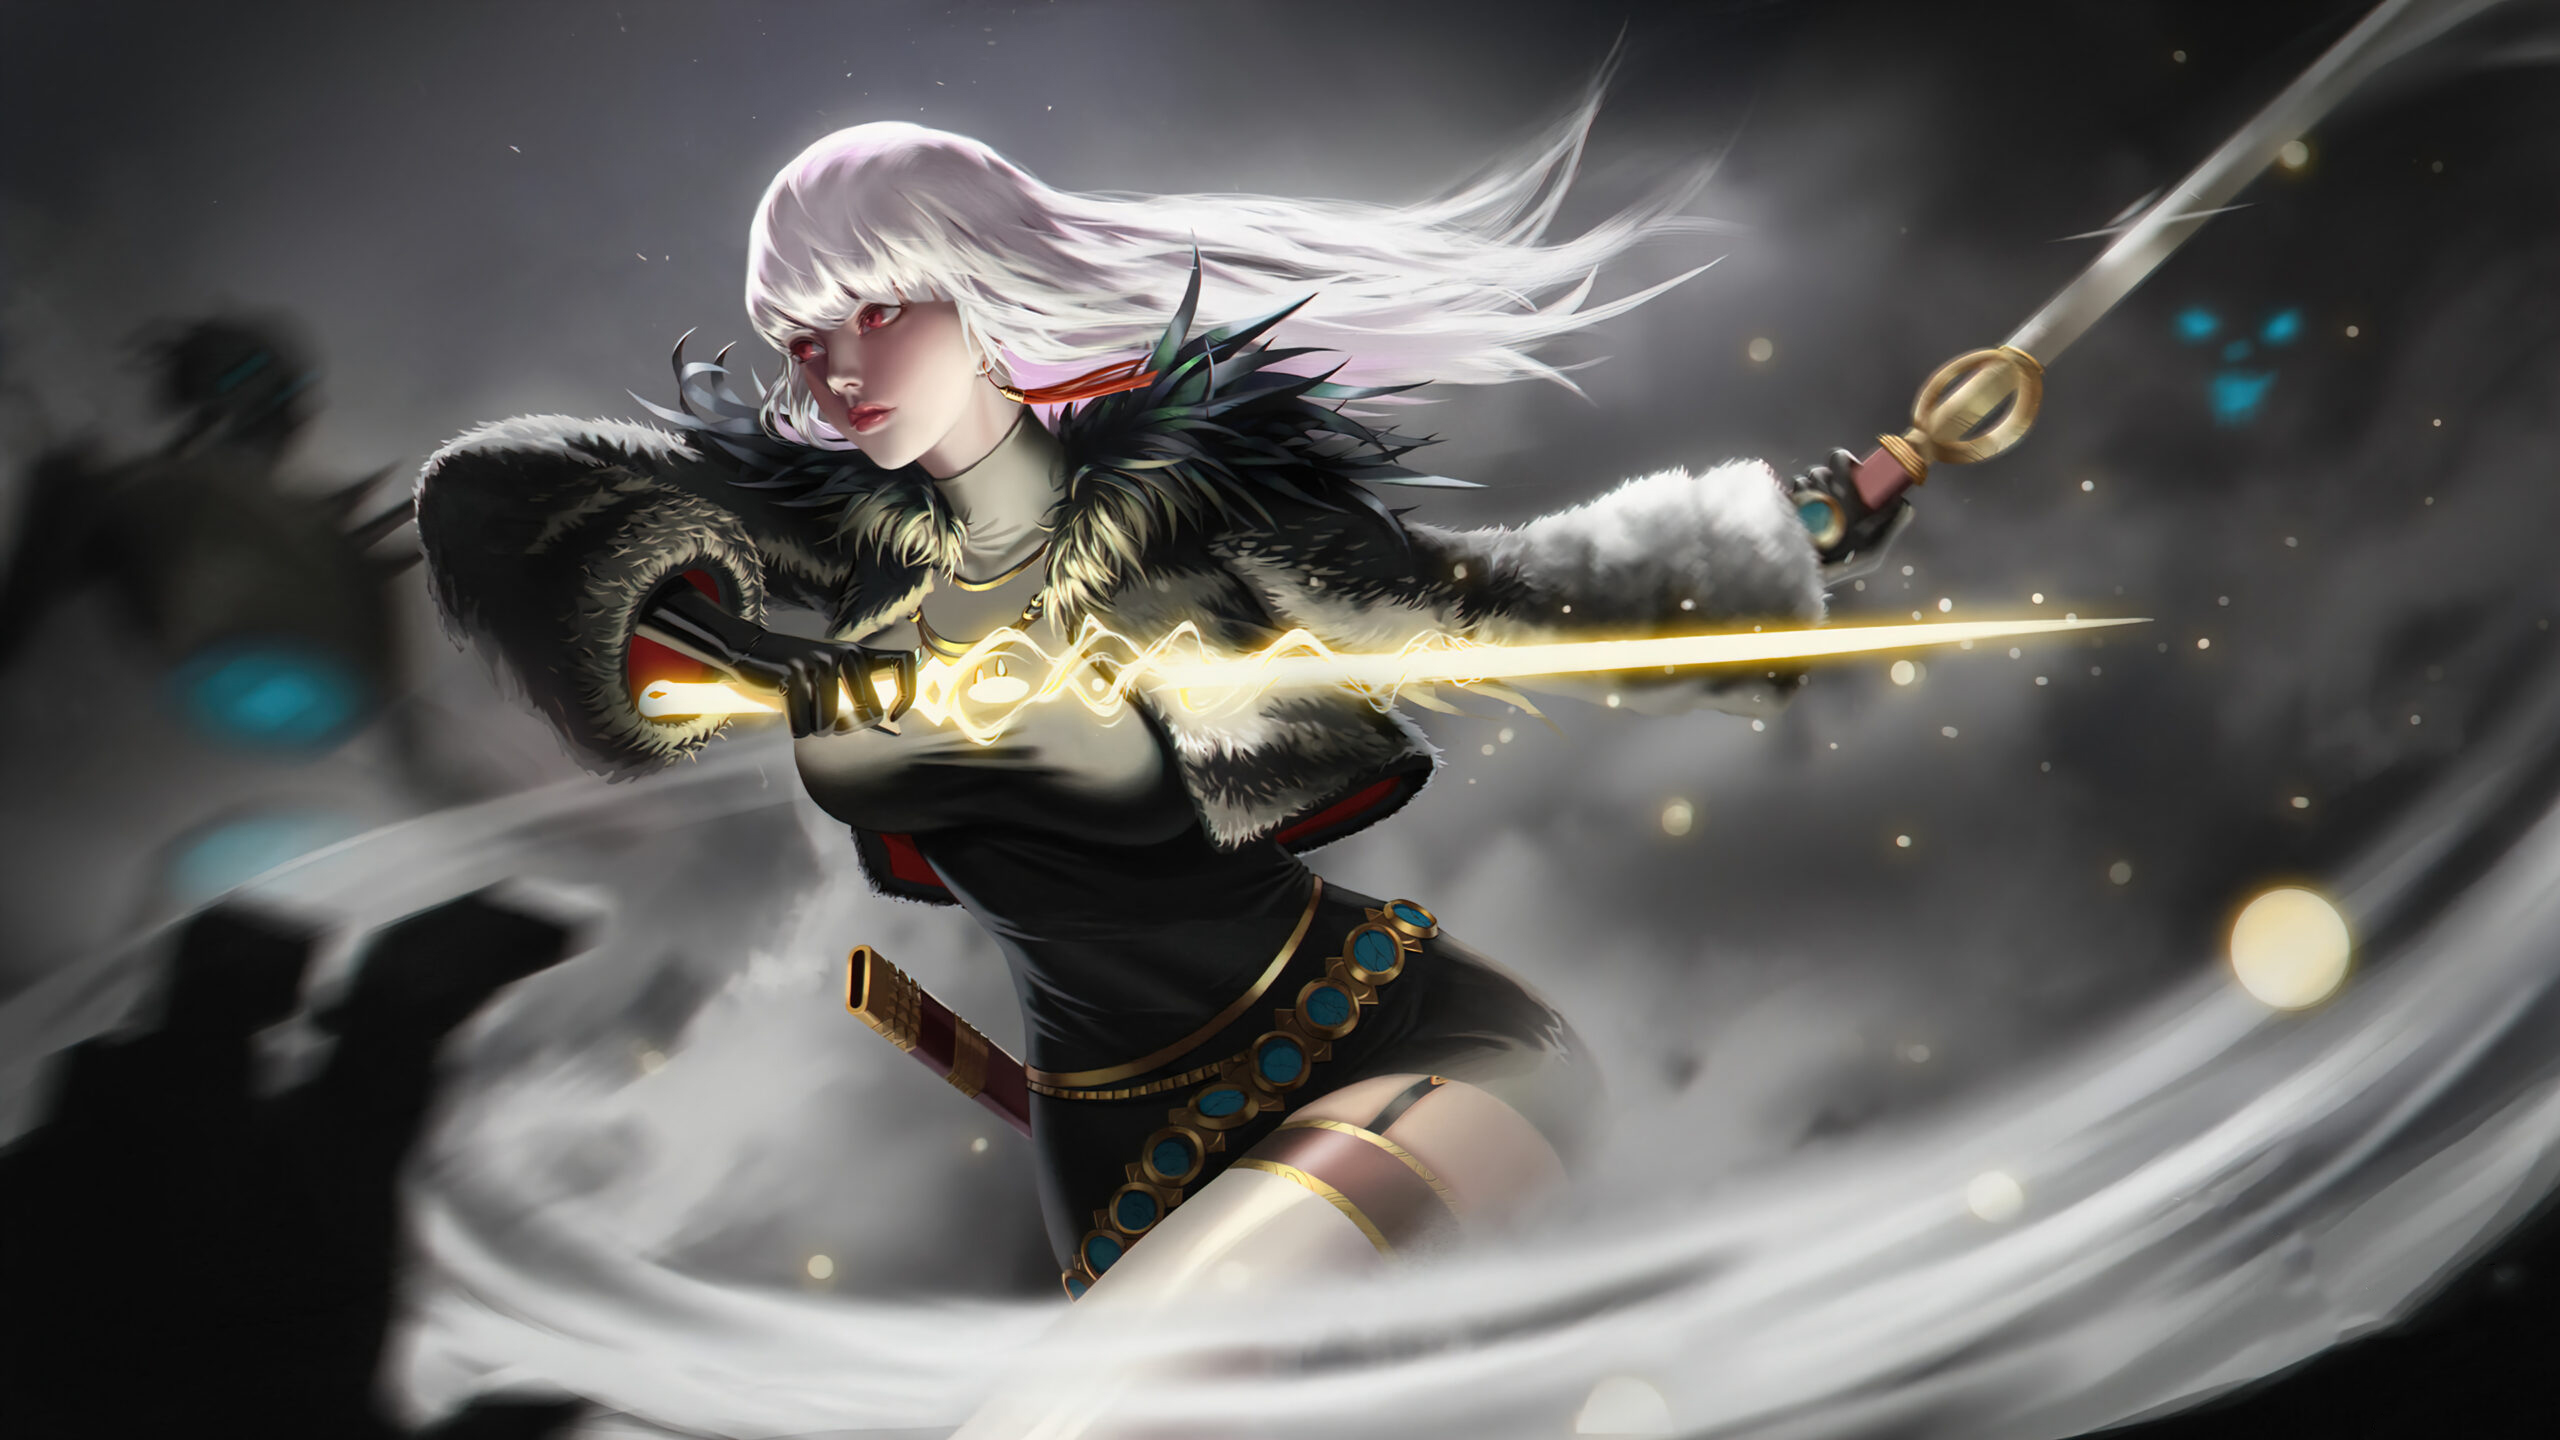 Hình nền nữ tướng Akali trong game liên minh huyền thoại full hd | League  of legends, Lol league of legends, Scifi fantasy art